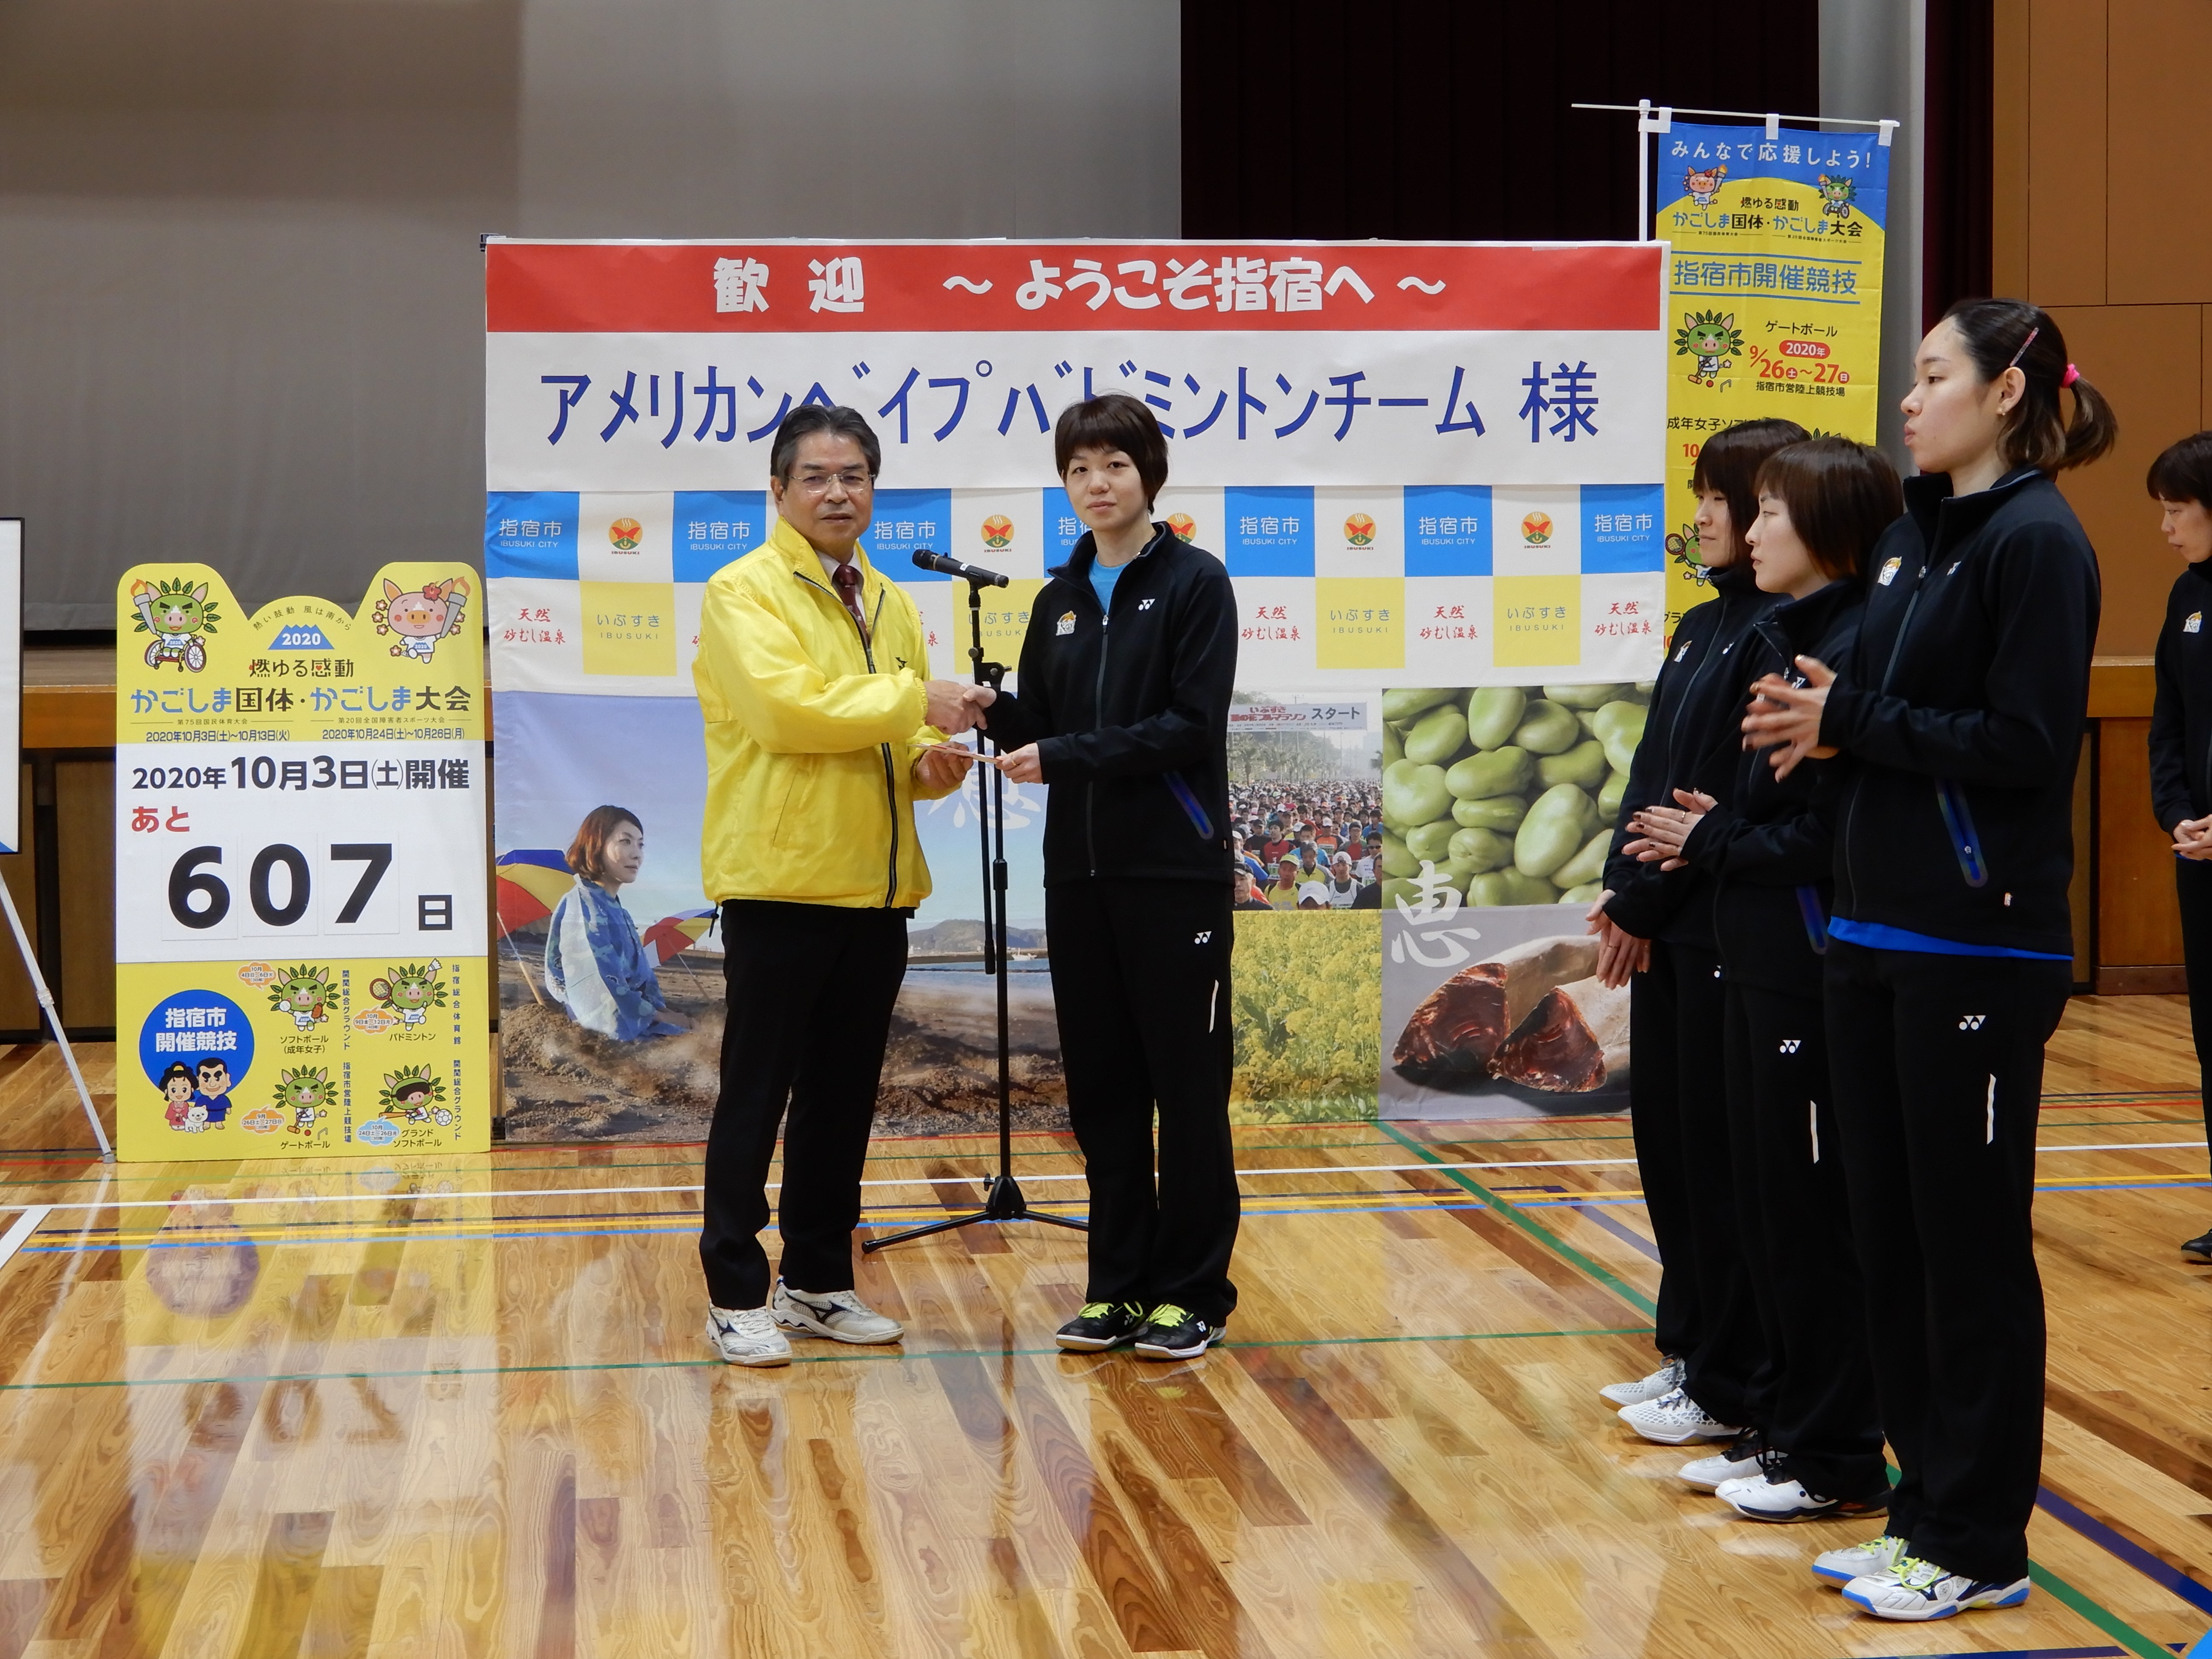 廣田 彩花 選手へ指宿市からスポーツ合宿奨励金の贈呈の様子